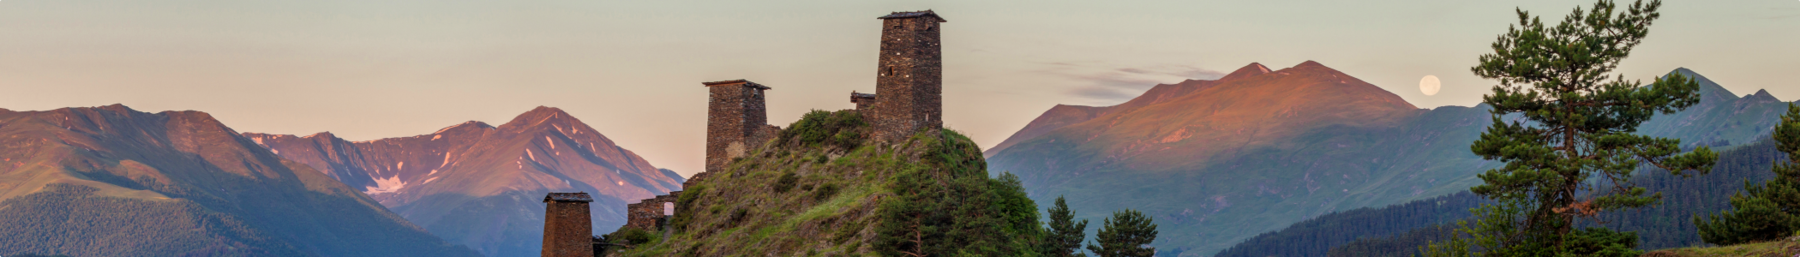 Caucasus banner Keselo Fortress in Tusheti.png